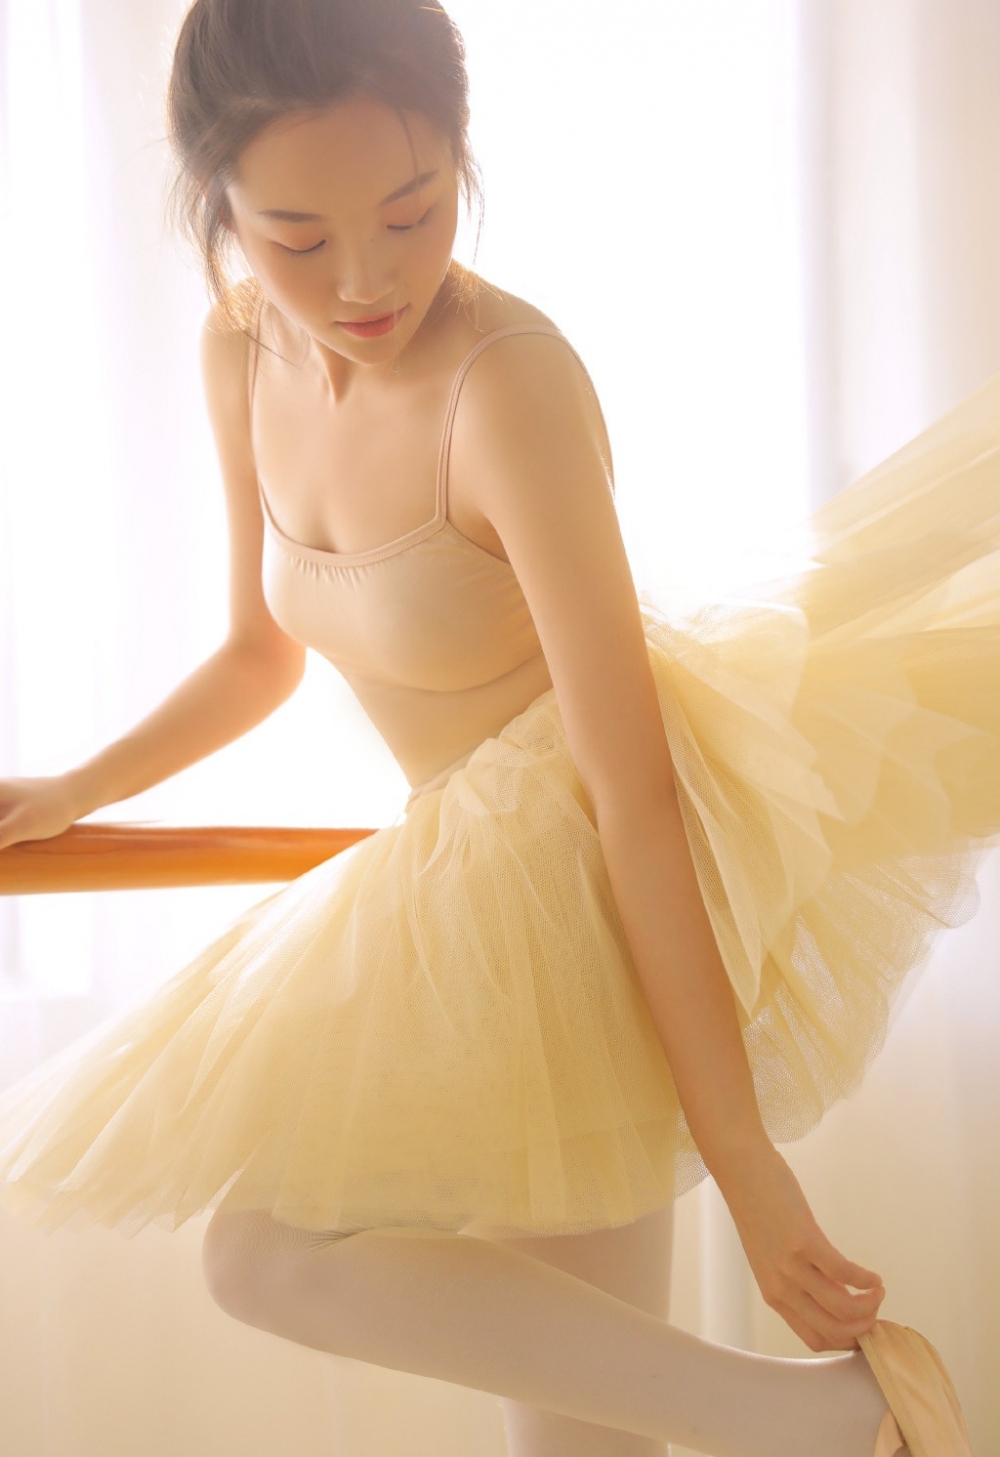 年轻的舞蹈美女老师露背白丝玉足美腿写真图片